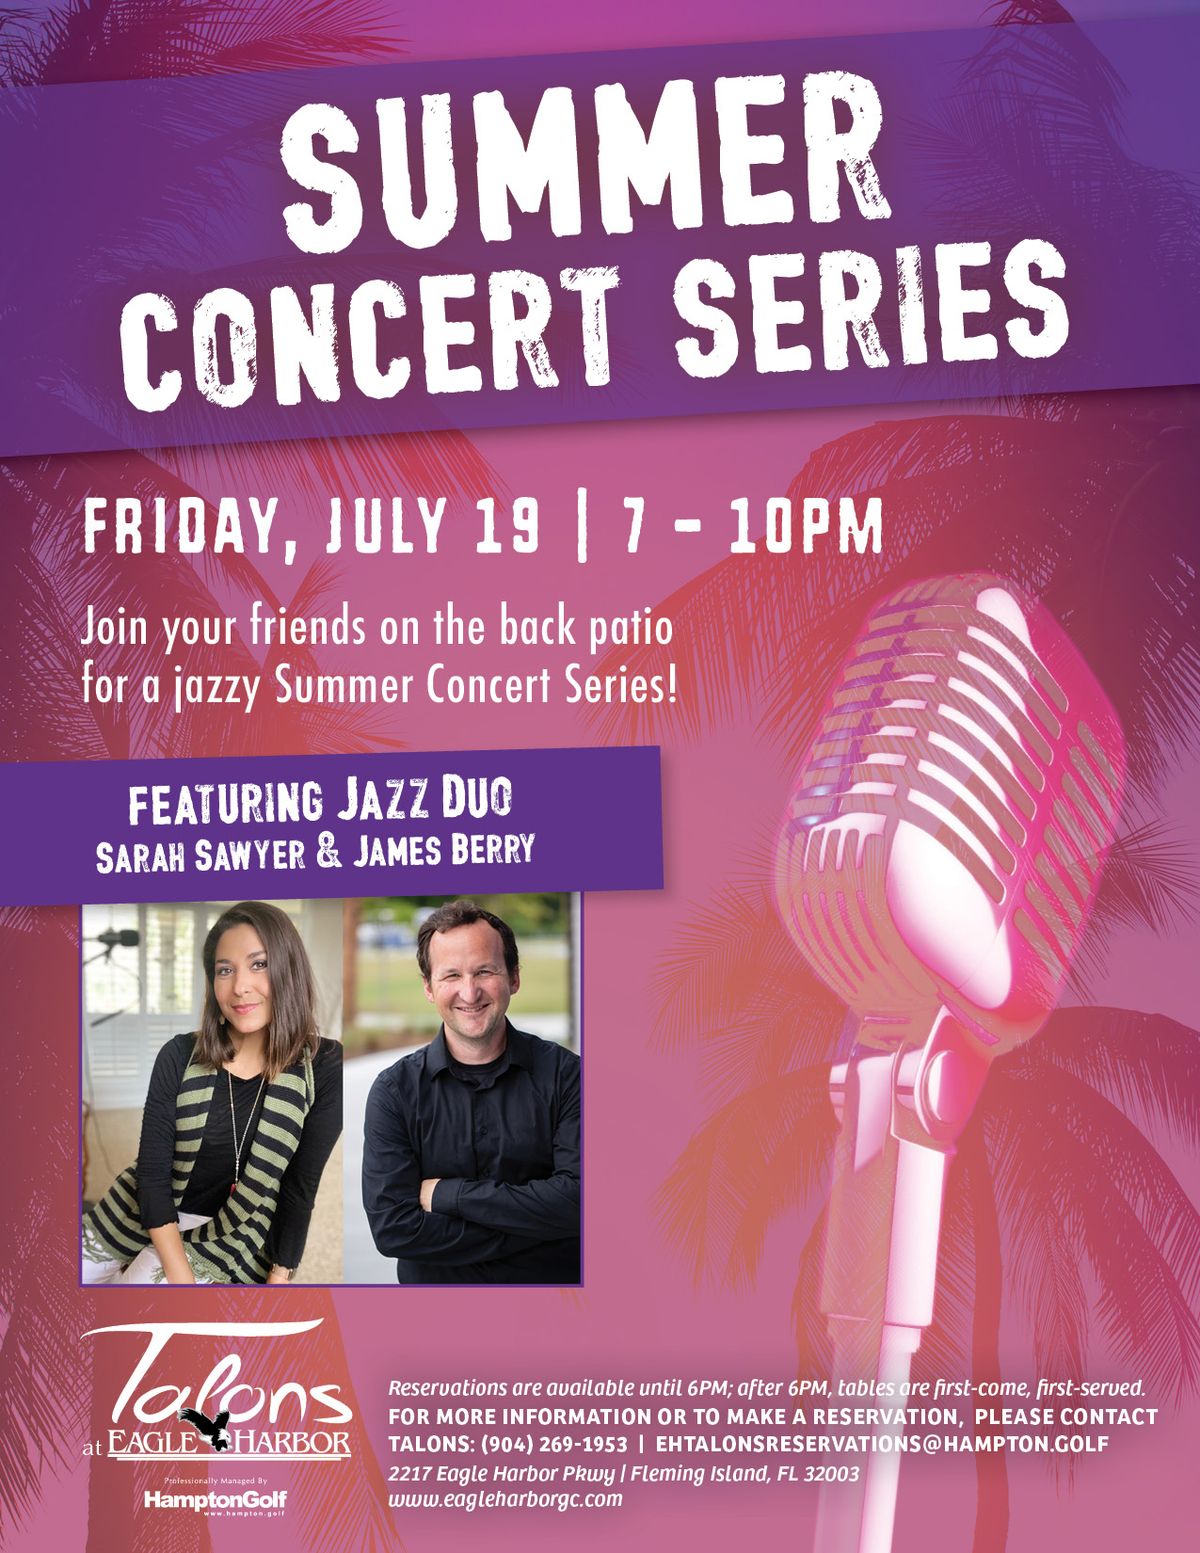 Summer Concert Series: Sarah Sawyer & James Berry